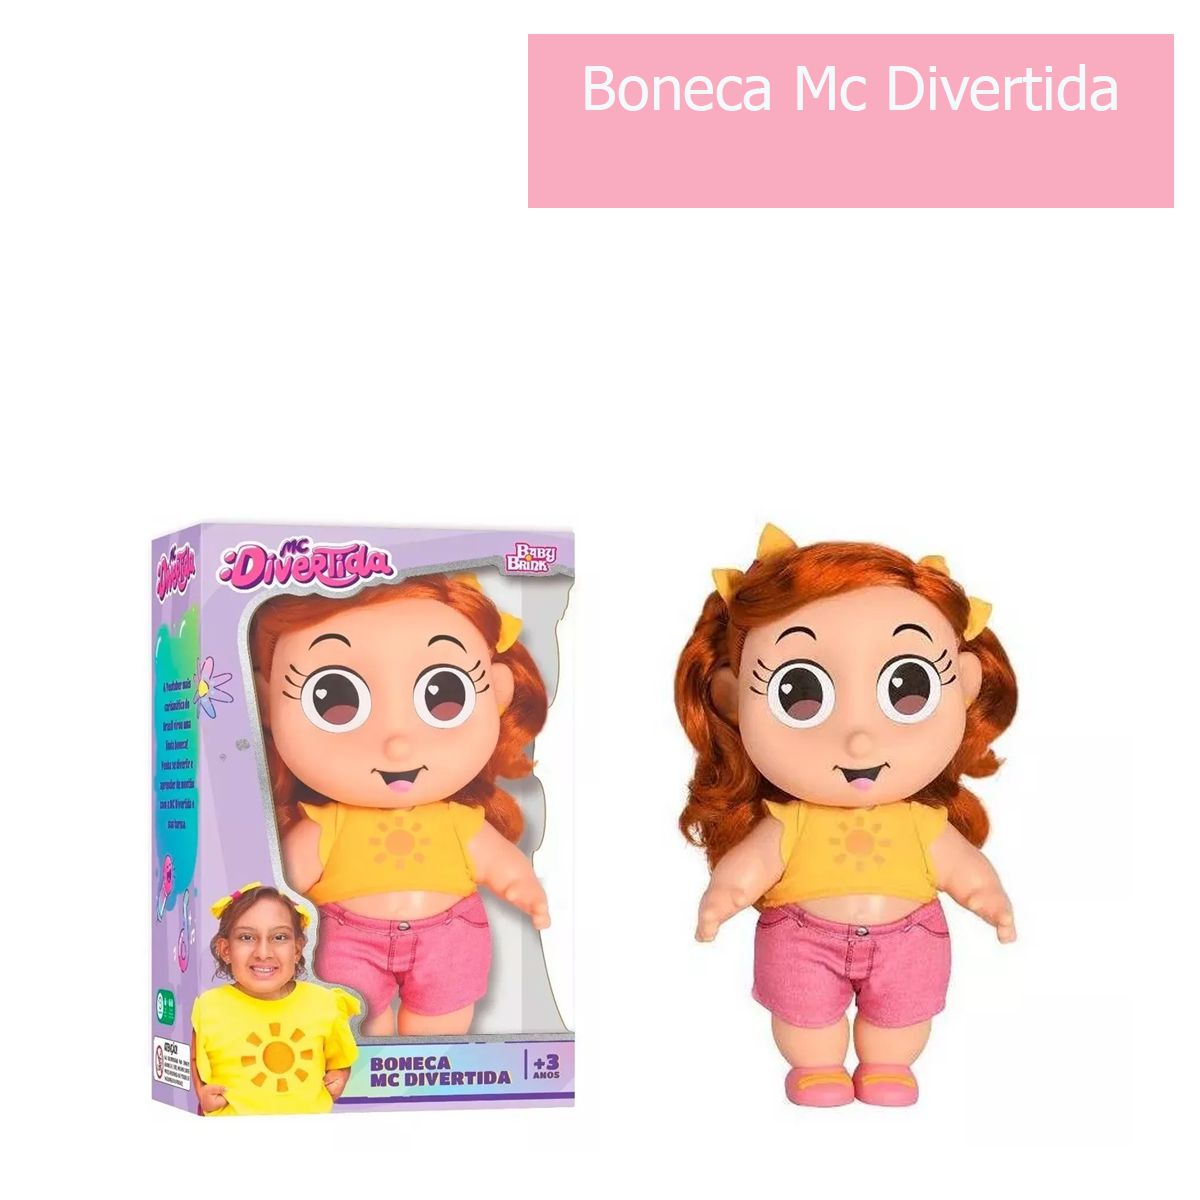 Nova Boneca Mc Divertida r Maria Clara Original